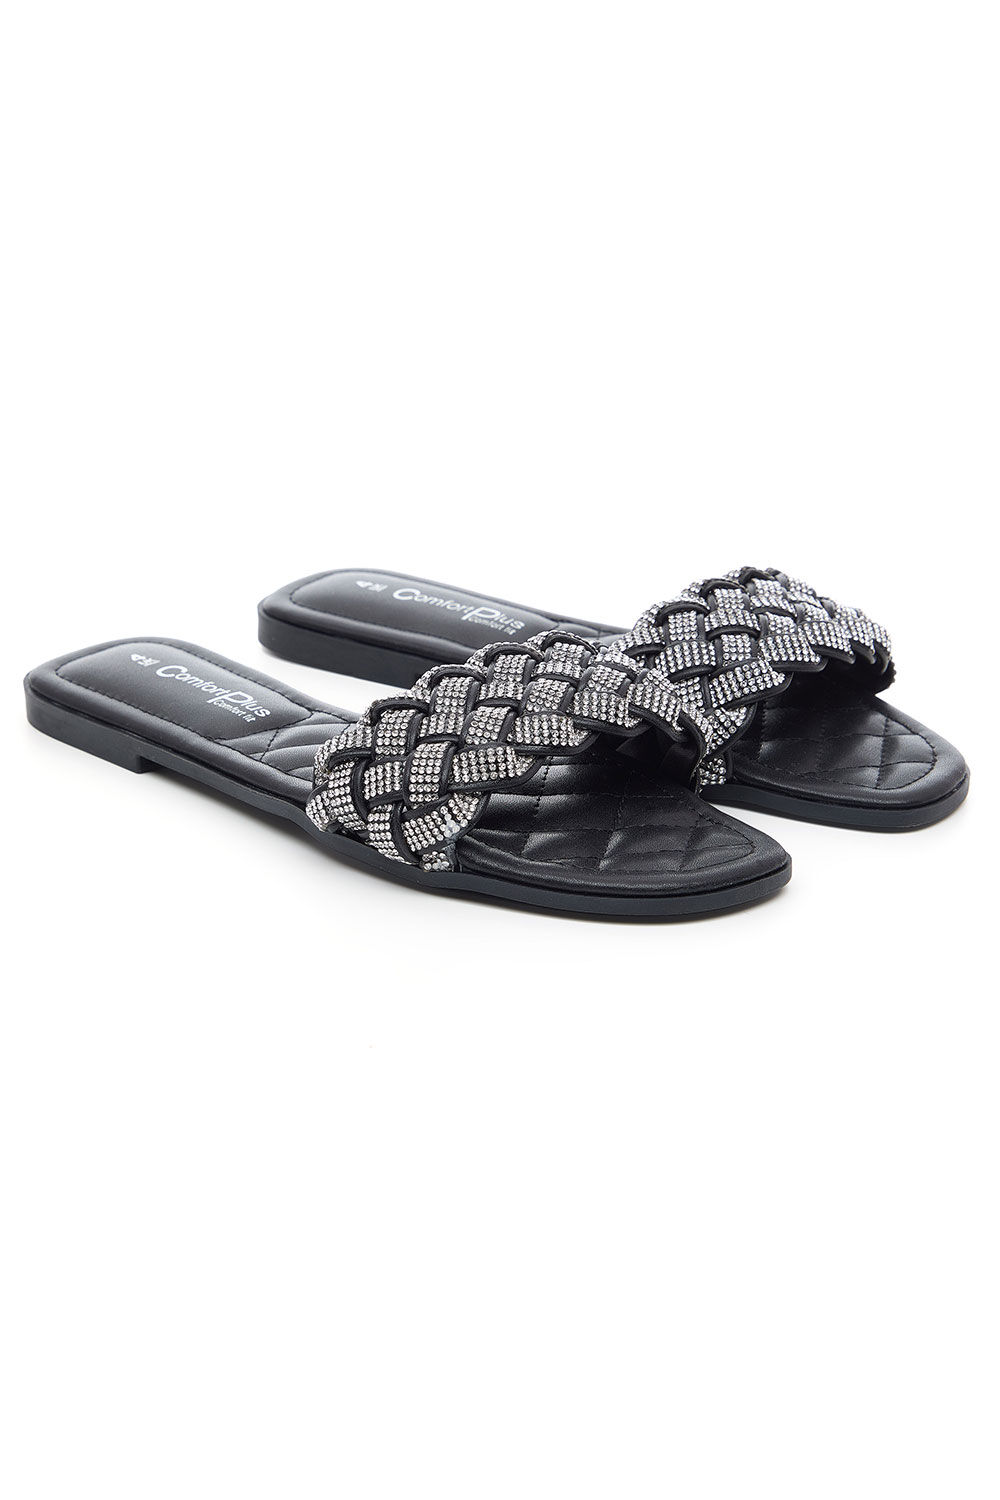 Comfort Plus Black - Diamante Weave Front Band Flat Sandals, Size: 6